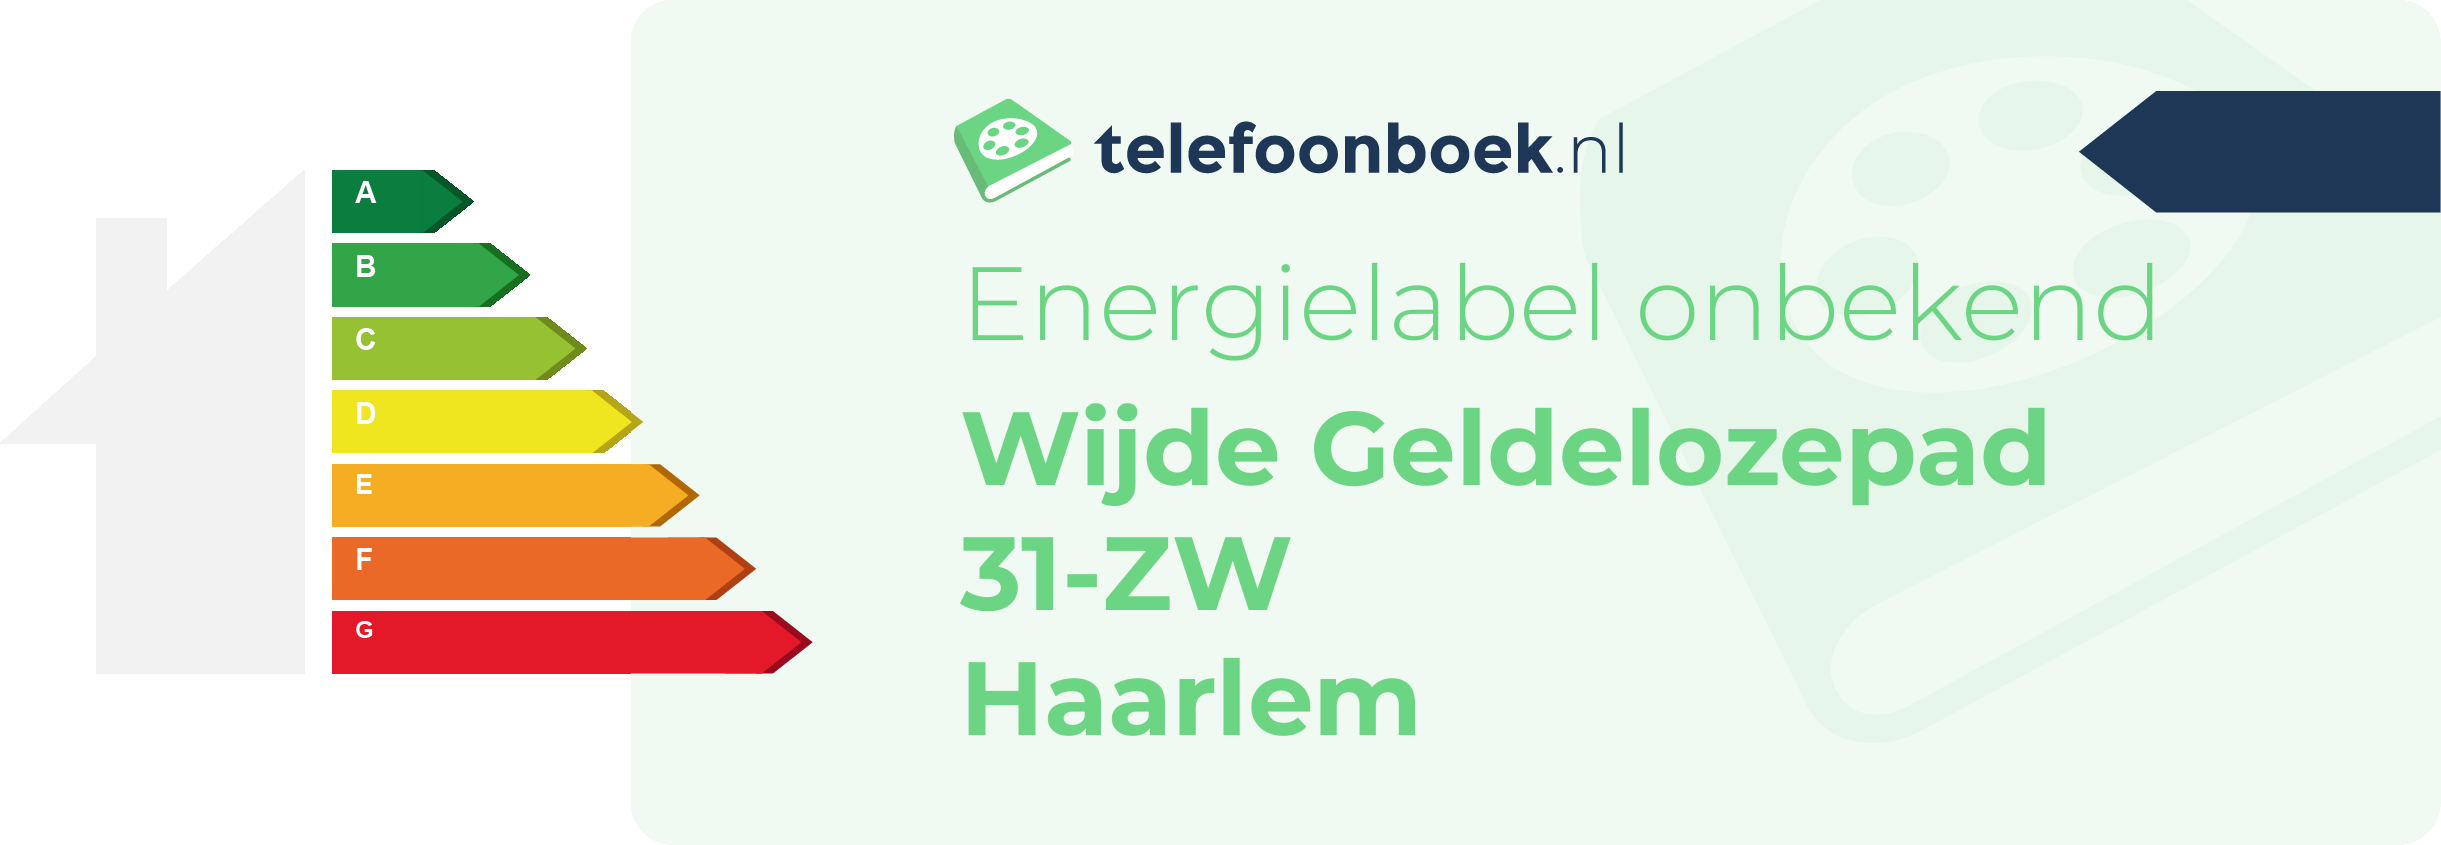 Energielabel Wijde Geldelozepad 31-ZW Haarlem